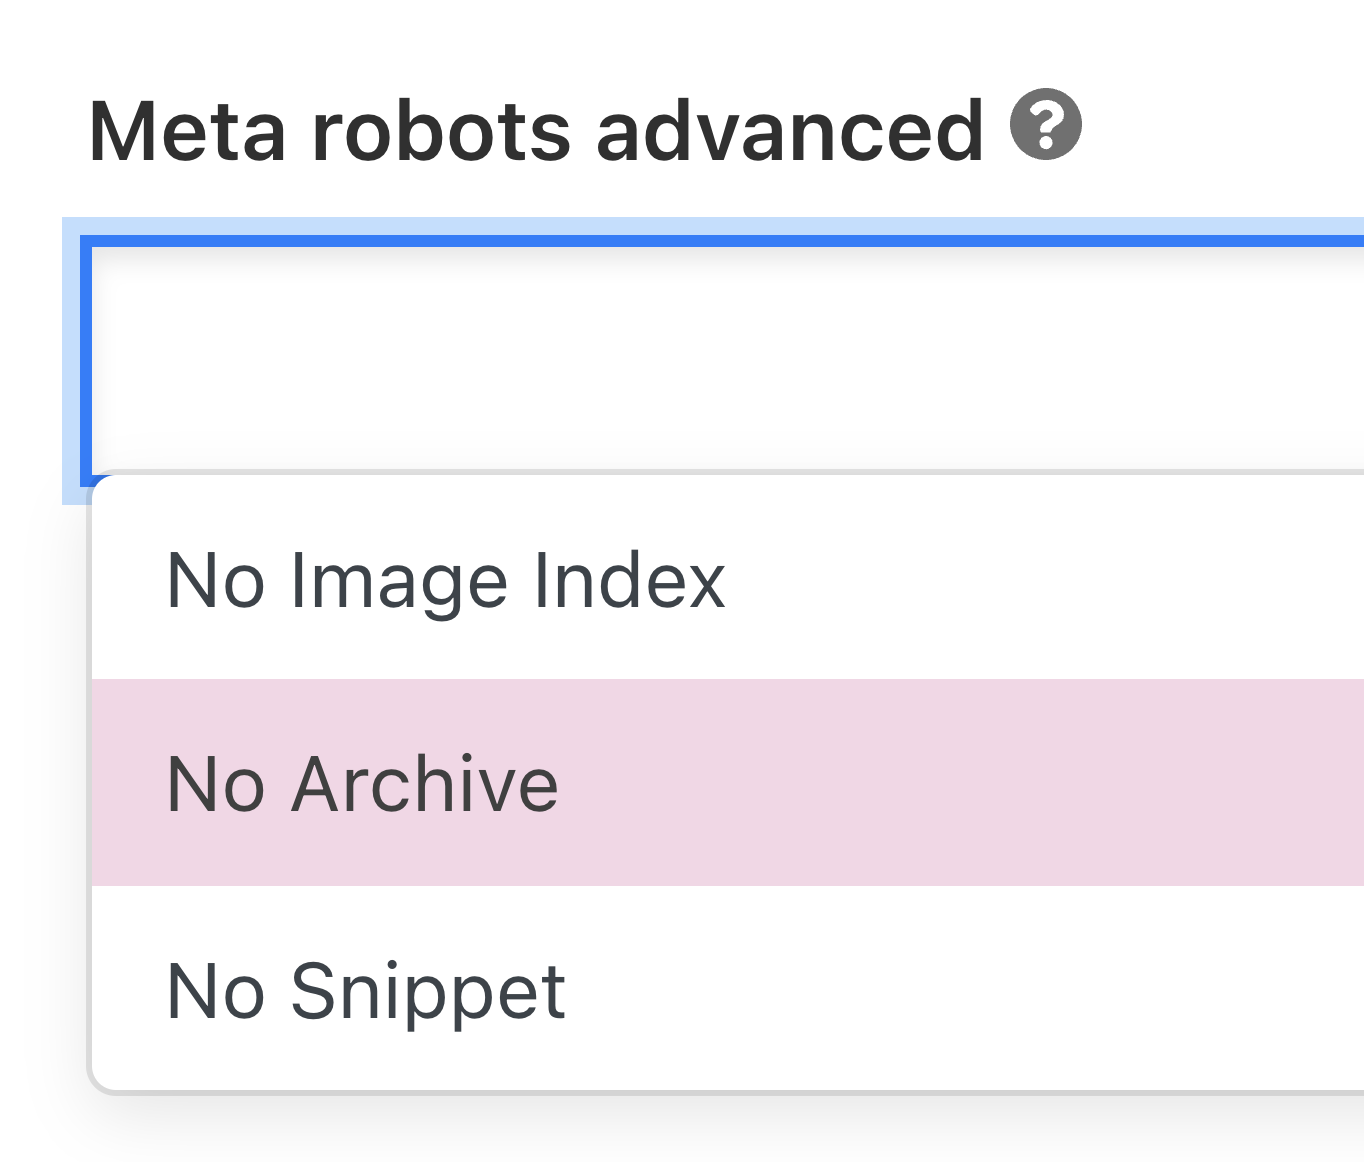 "Meta robots advanced" field